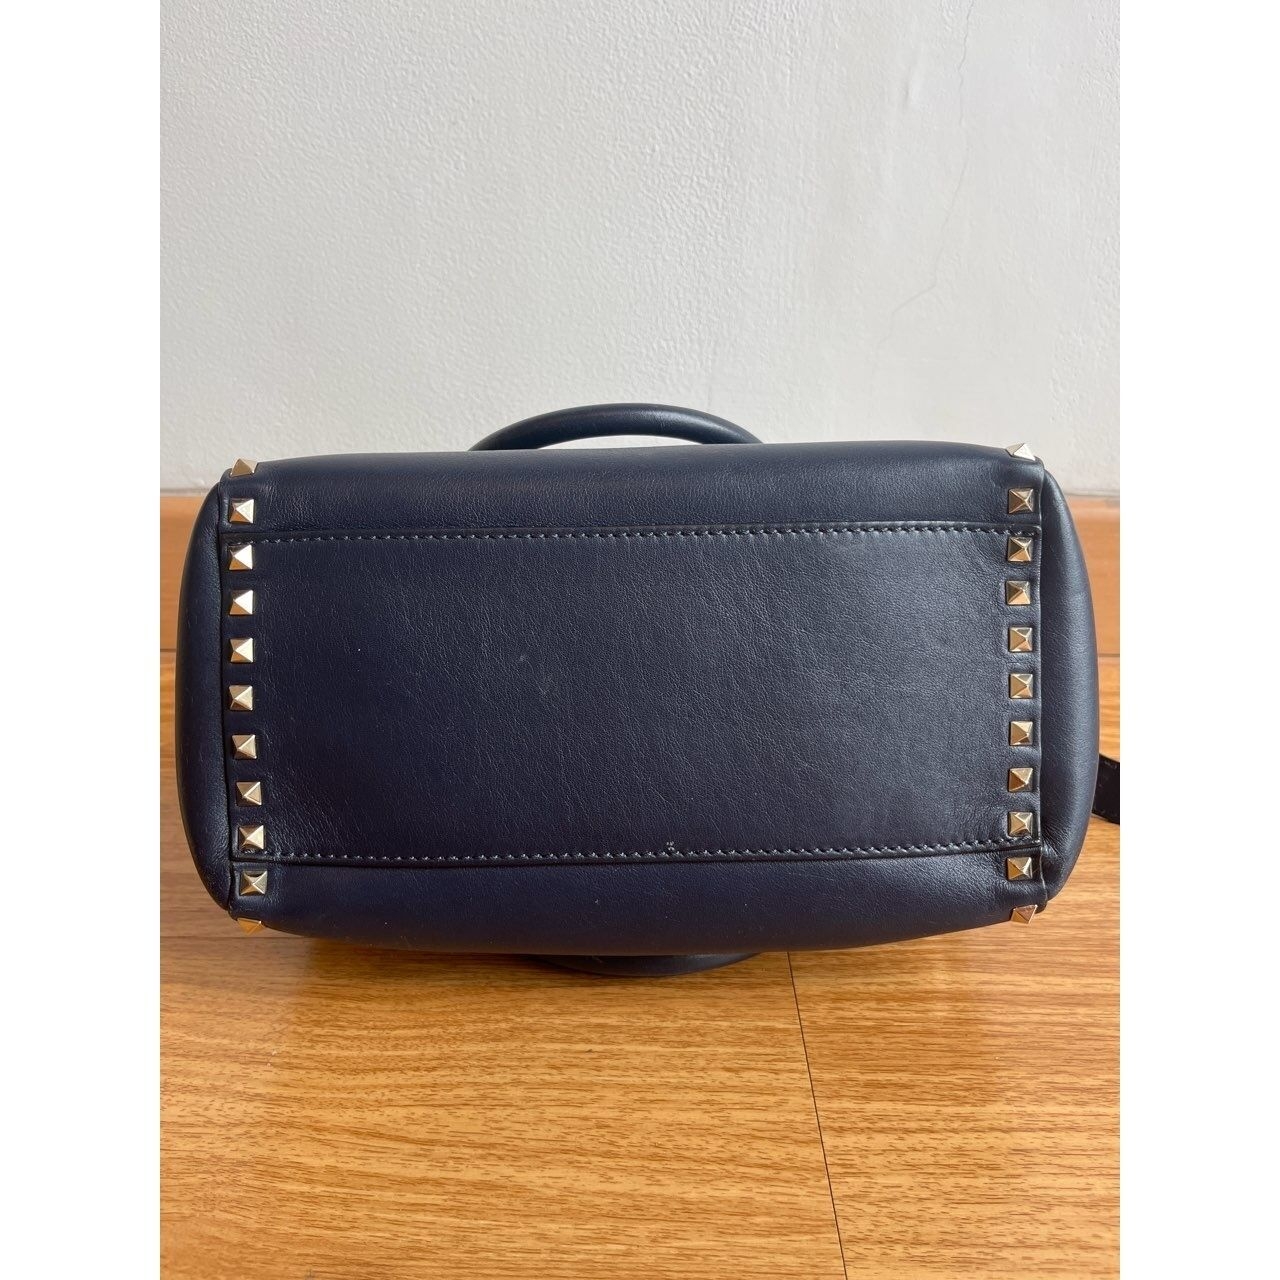 Valentino Garavani Vitello Rockstud Double Handle Dark Blue Handbag